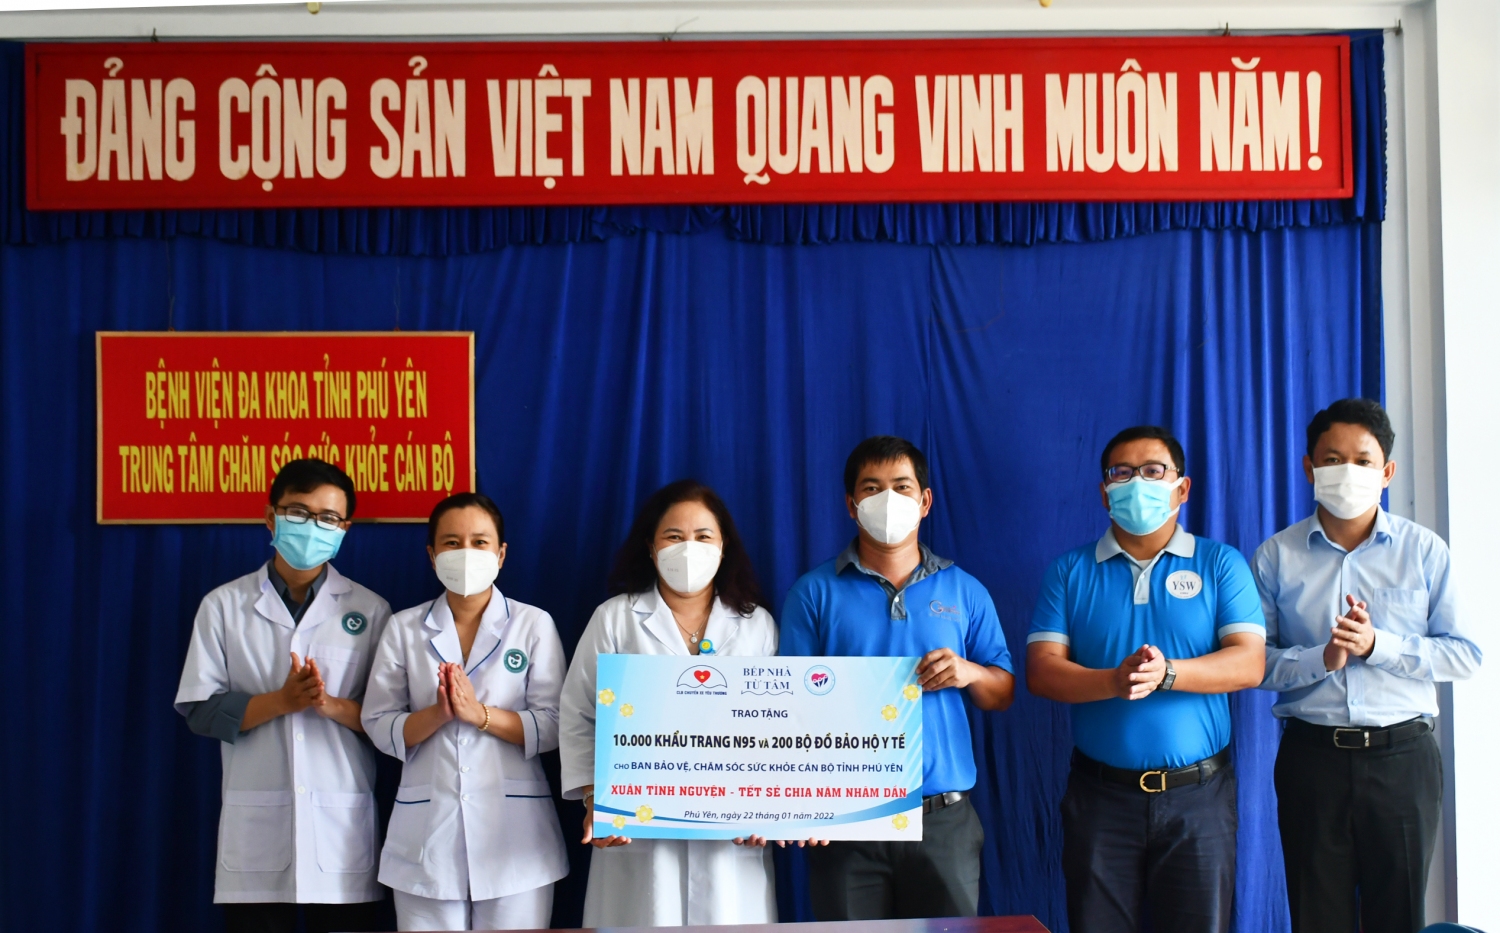 Đoàn trao bảng tượng trưng tặng trang thiết bị y tế cho Ban bảo vệ chăm sóc sức khỏe tỉnh Phú Yên.